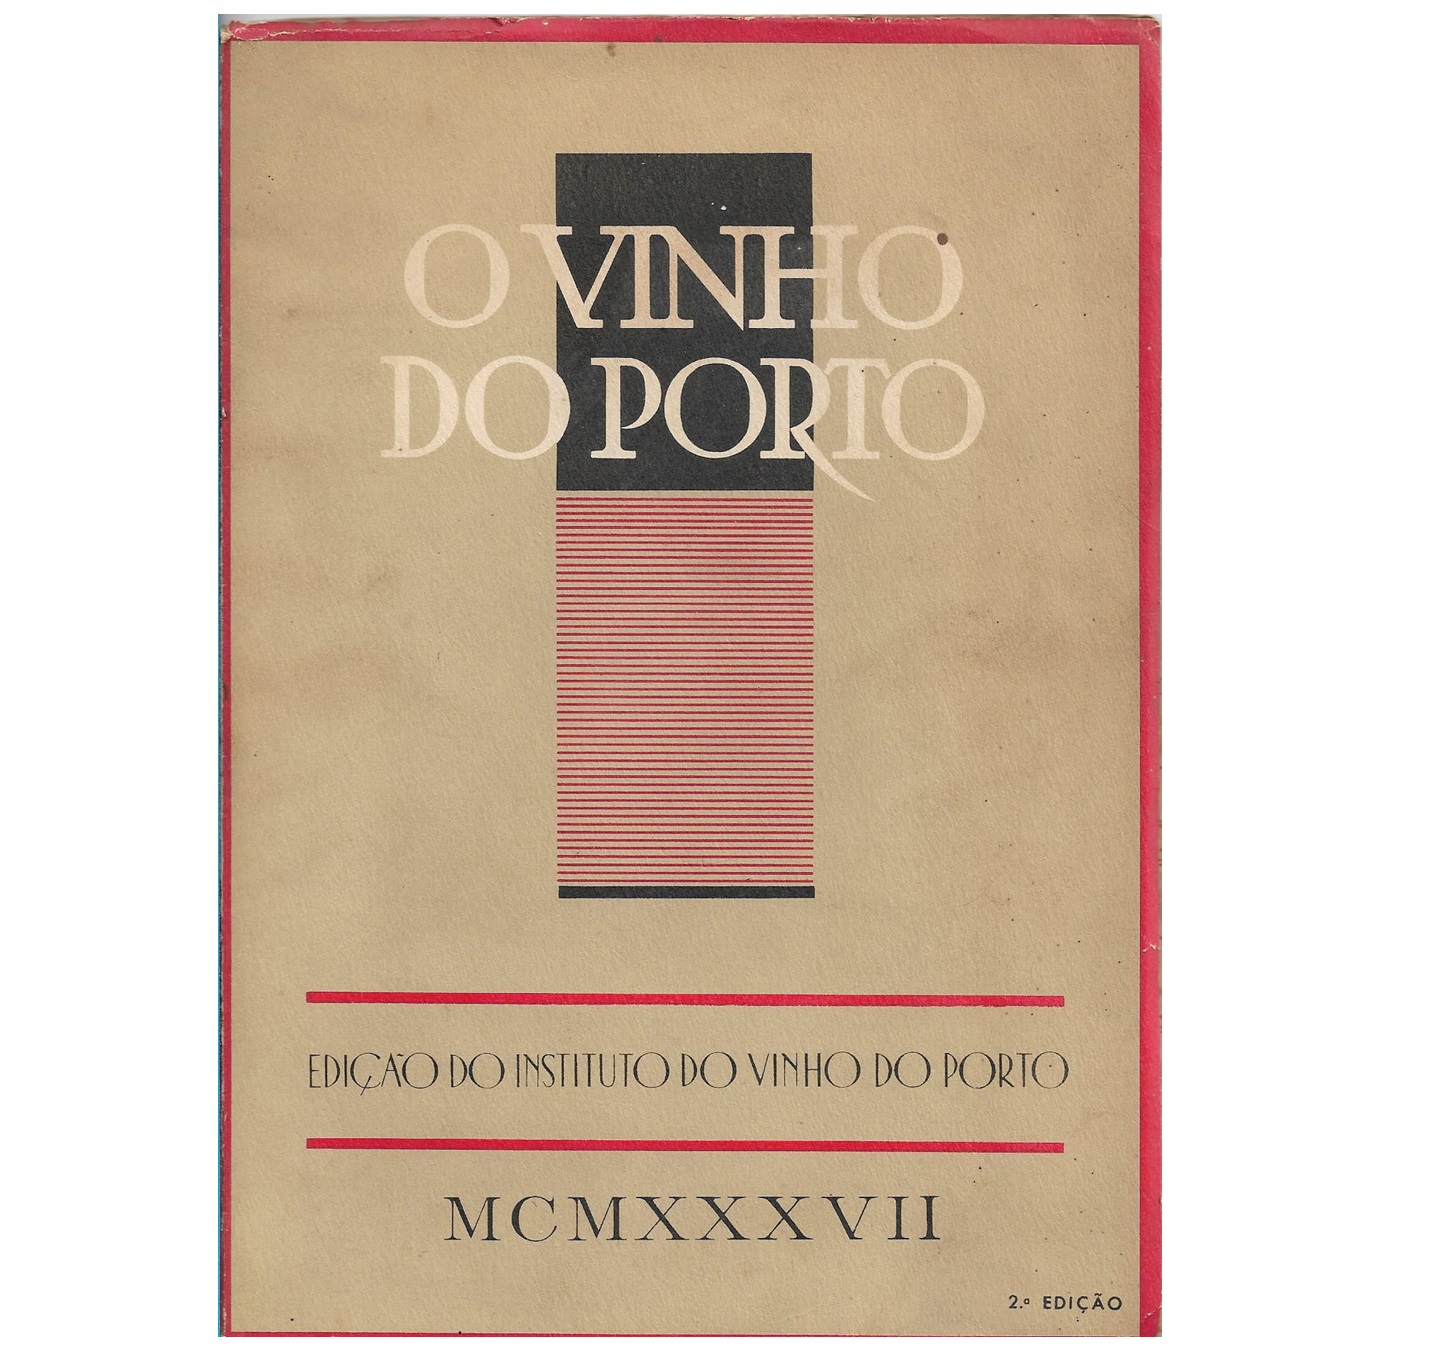 O VINHO DO PORTO [1937]